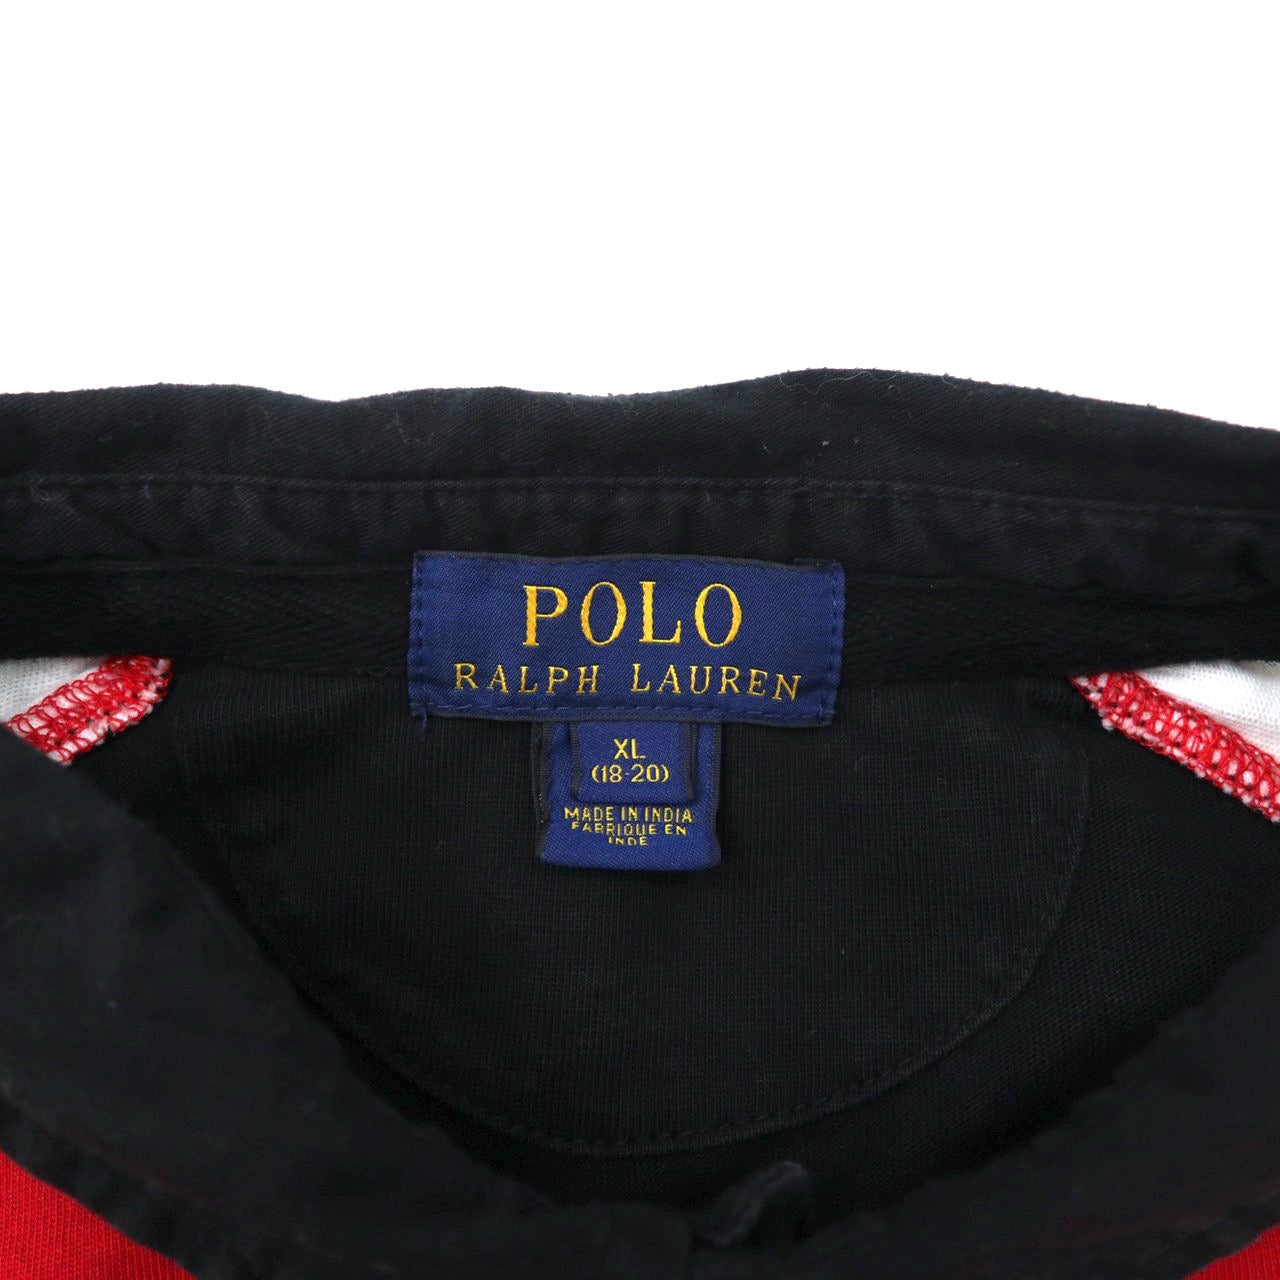 POLO RALPH LAUREN ラガーシャツ XL レッド コットン ビッグポニー刺繍 POLO DOWNHILL RACING SERIES